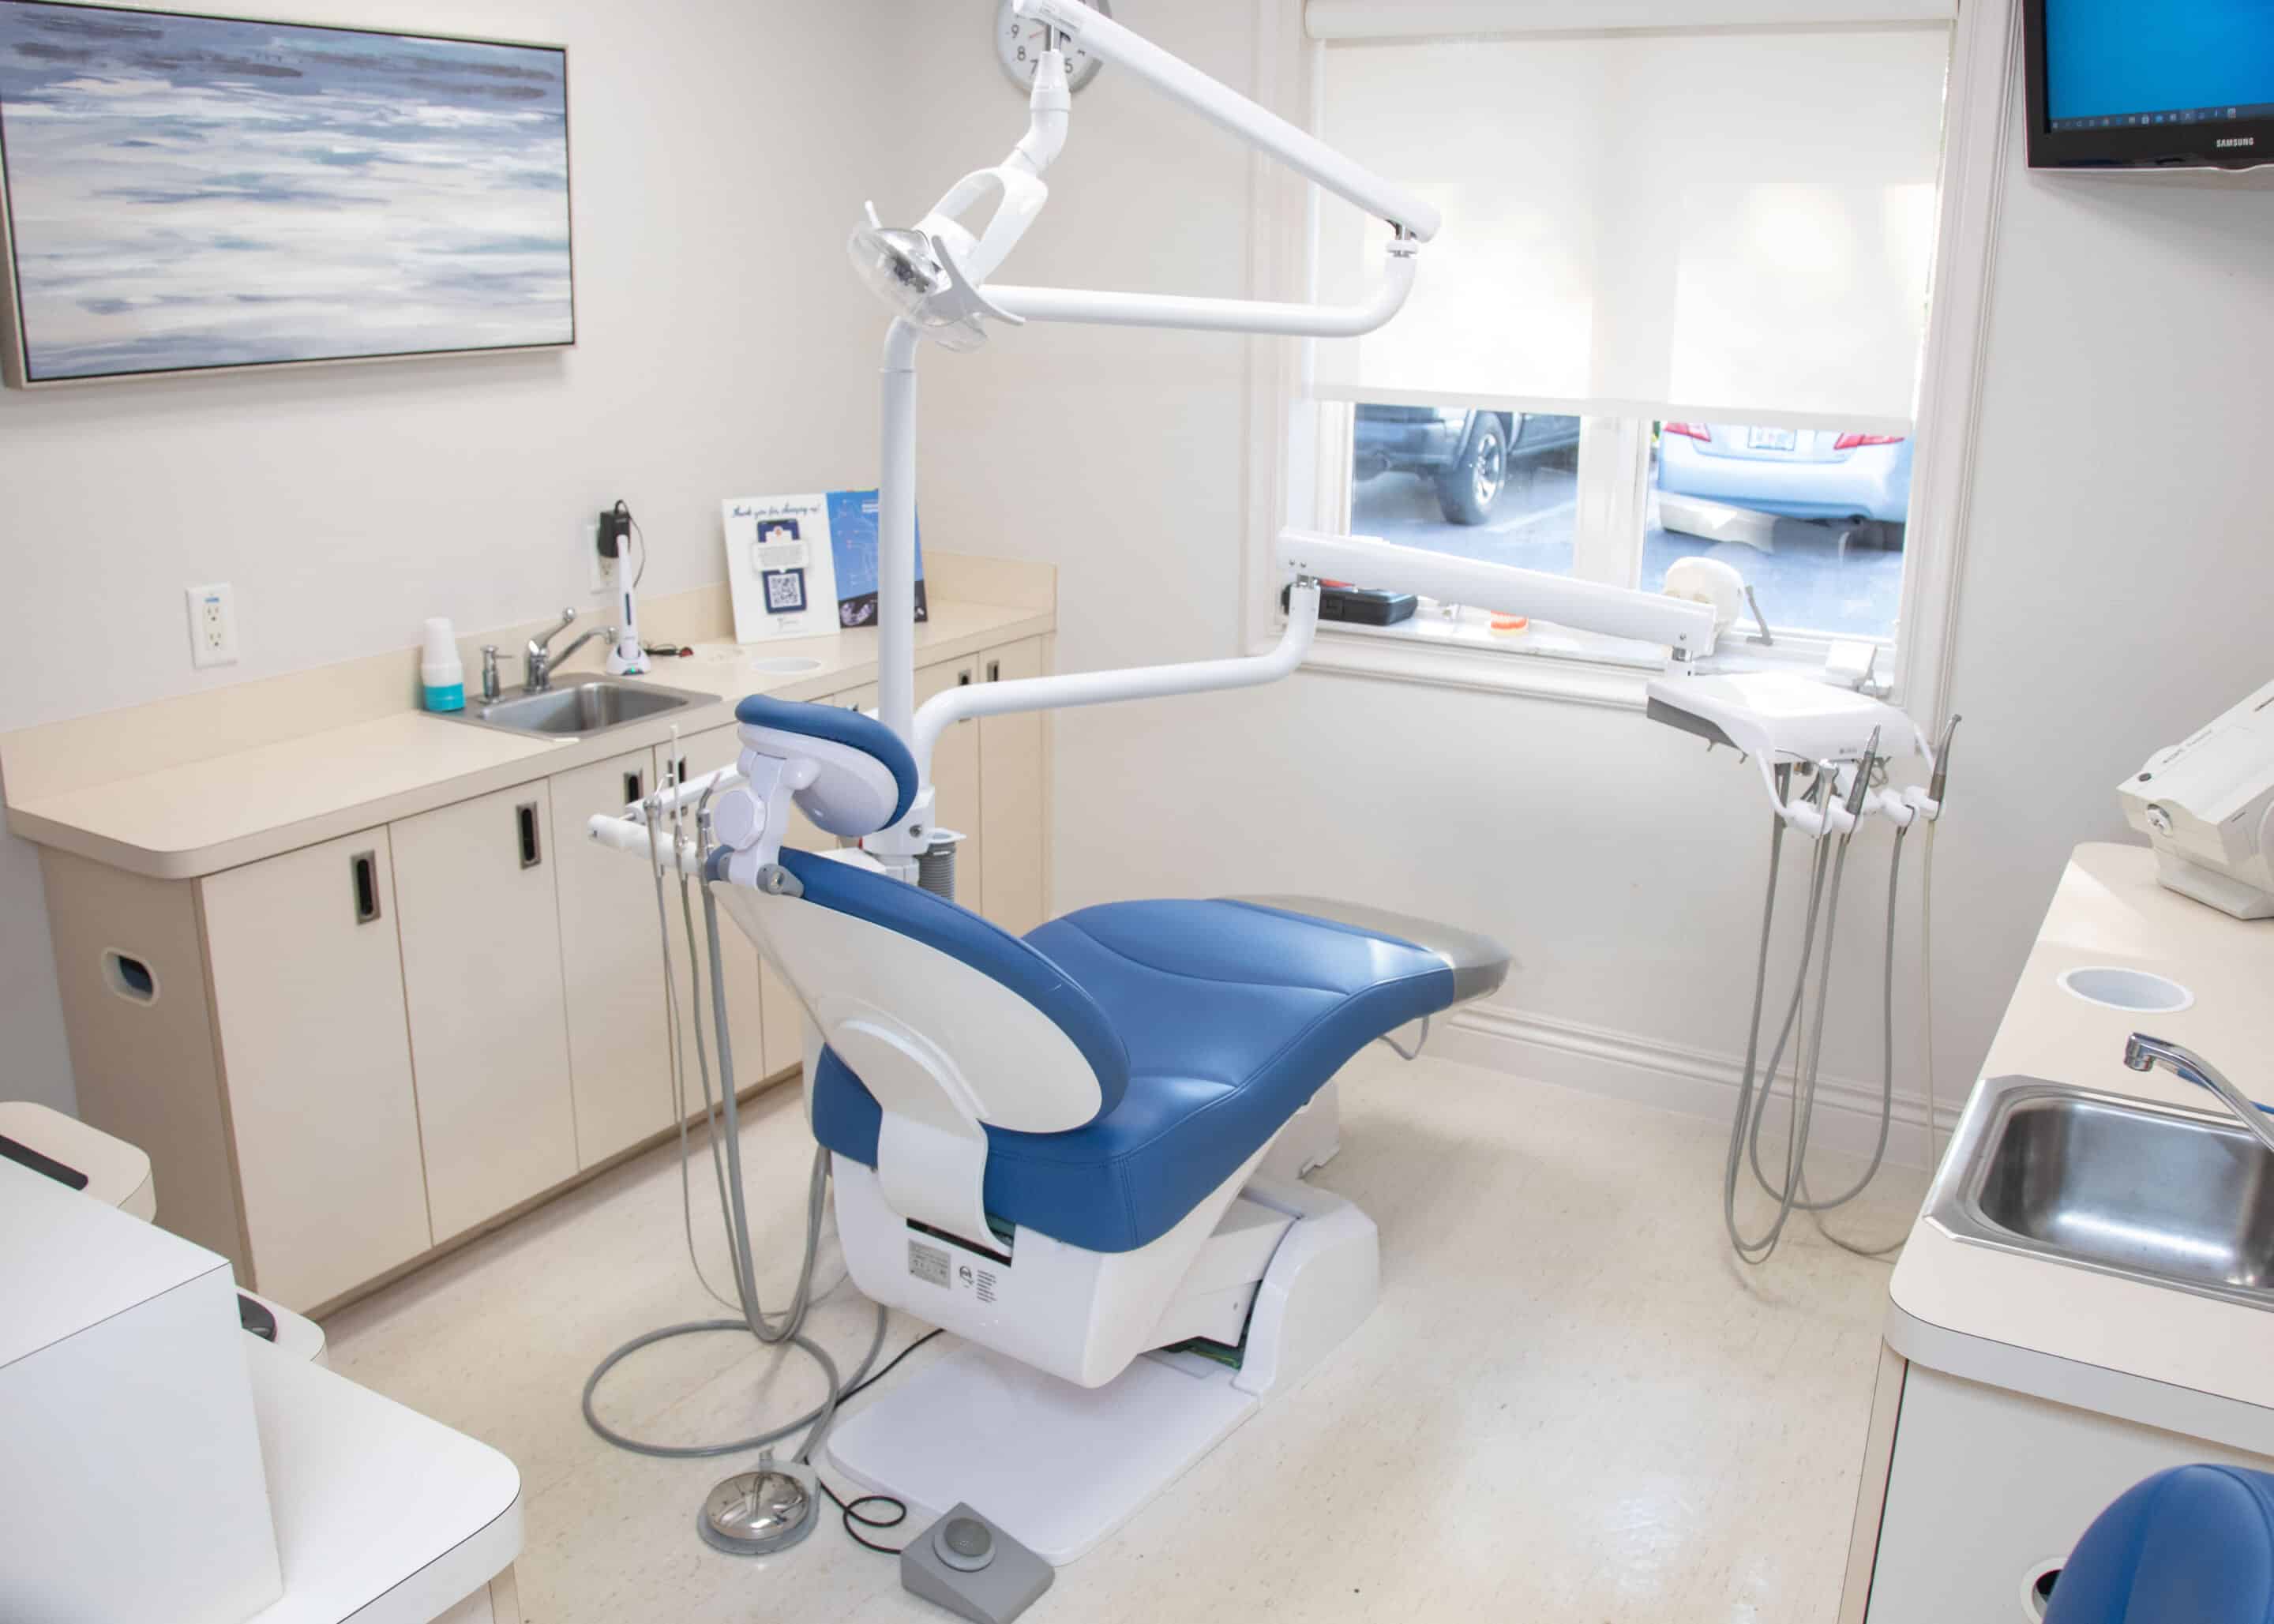 A view inside a dental exam room.